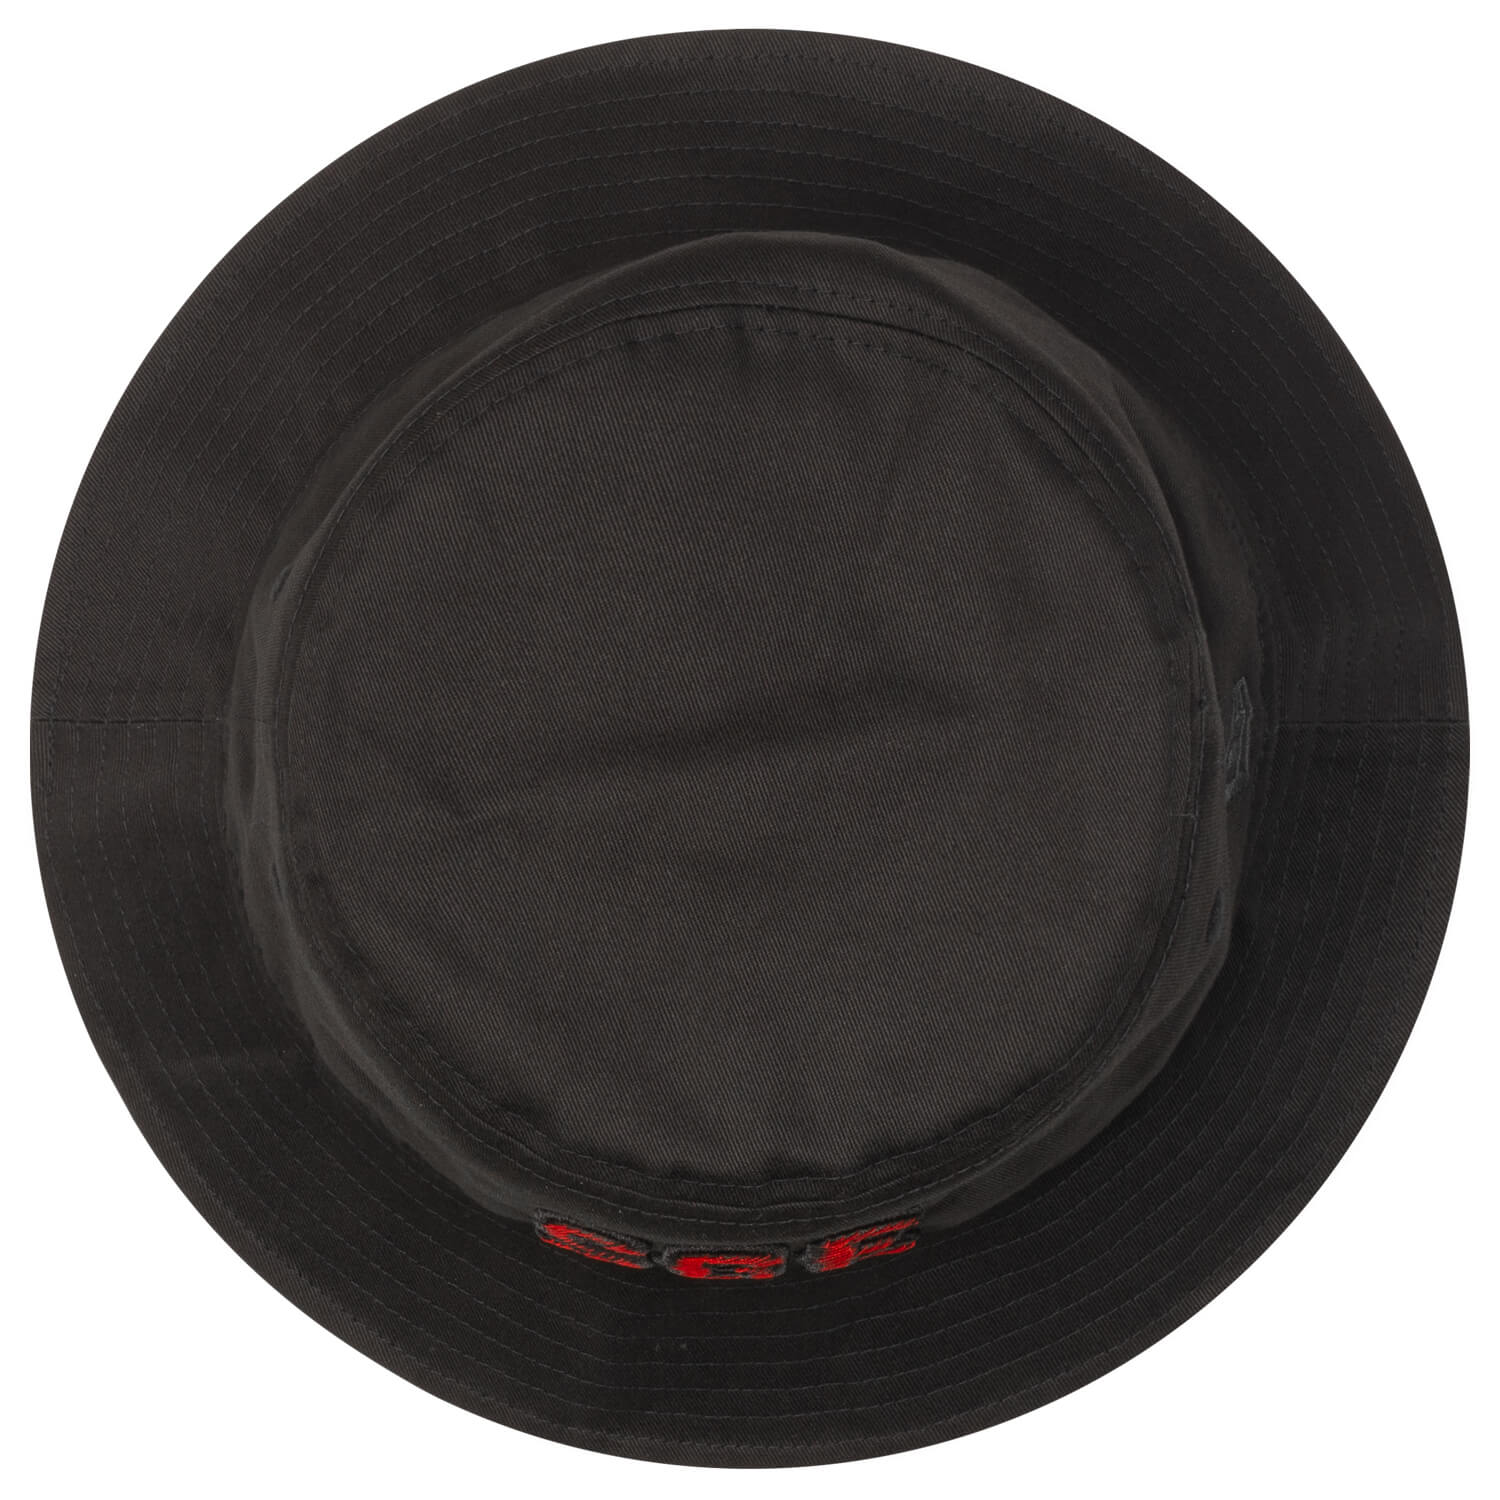 Bild 5: Bucket Hat SGE Red/Black